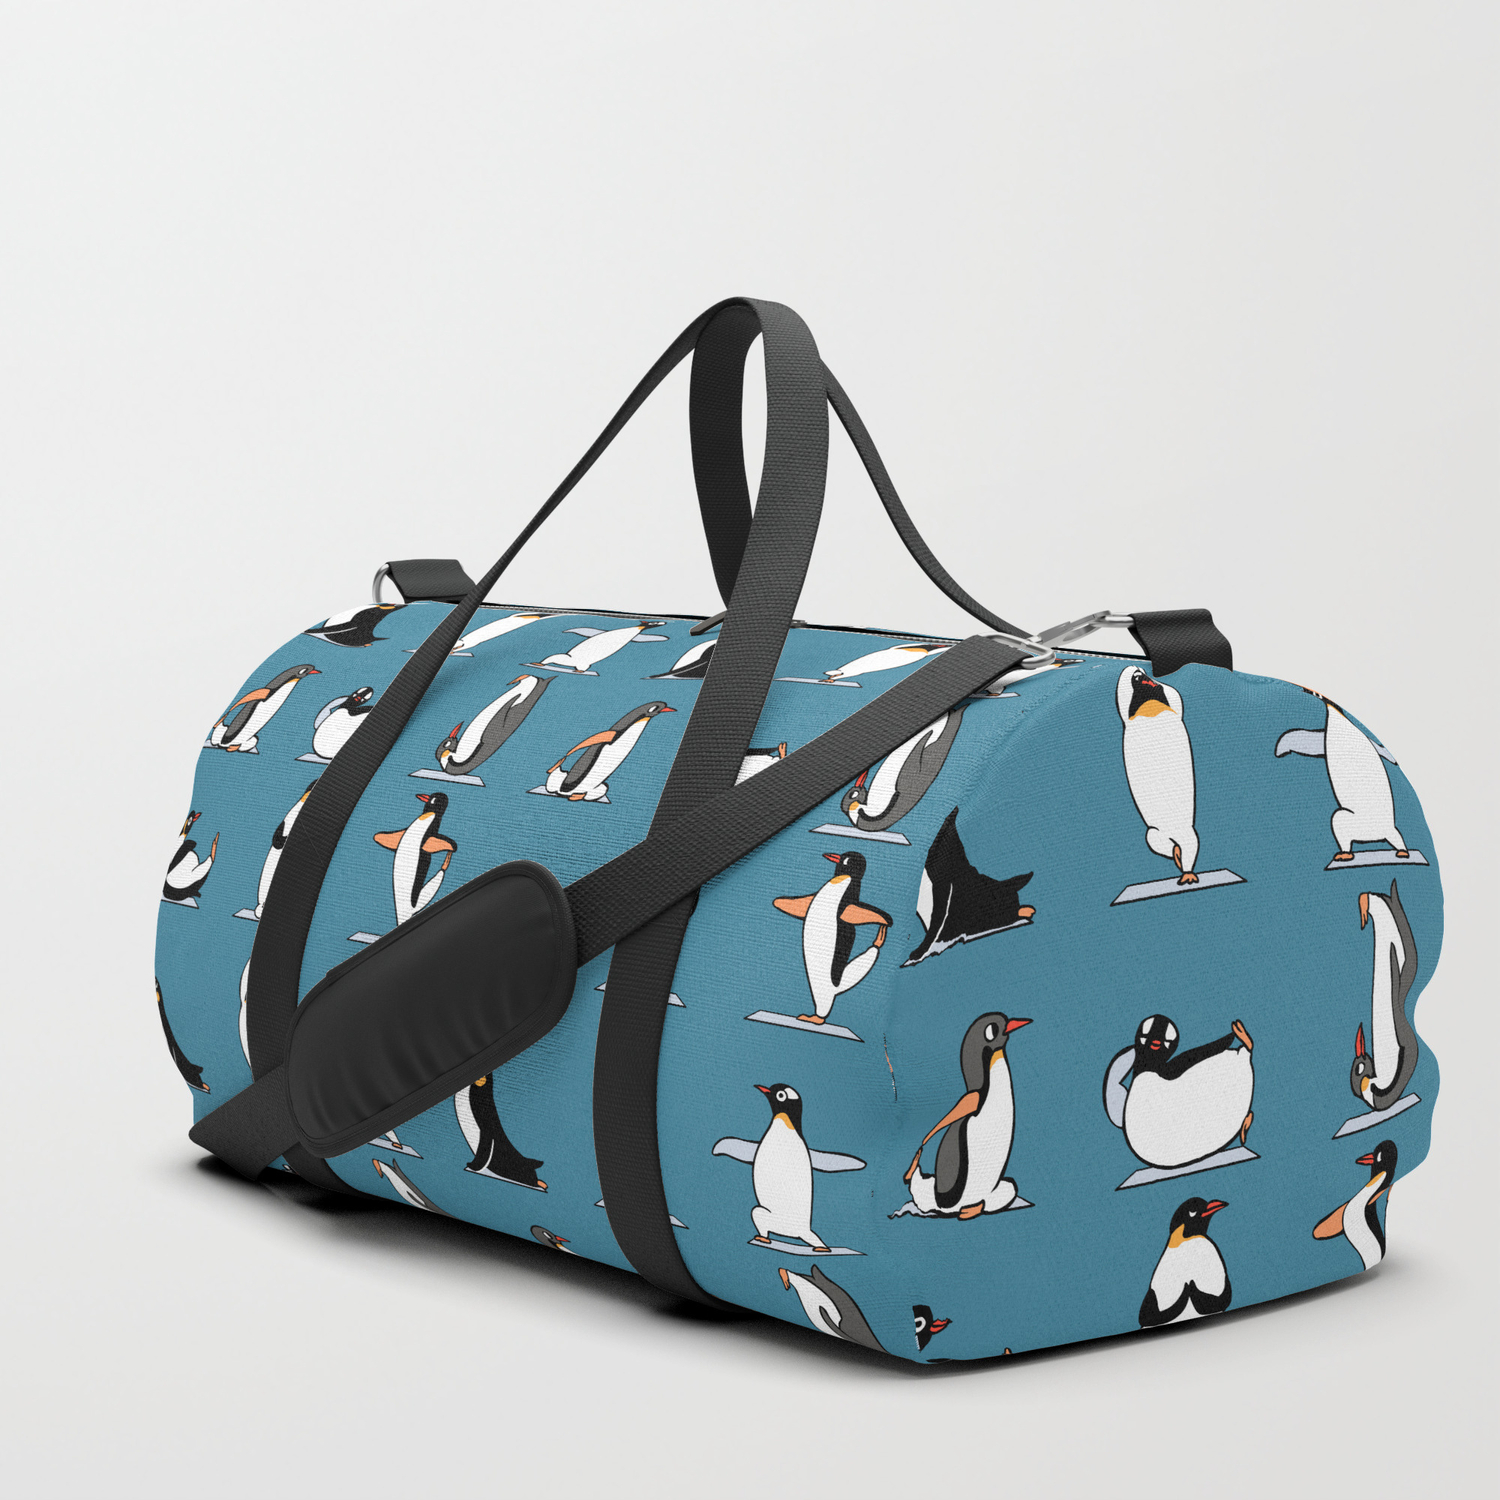 Penguin Yoga Duffle Bag by Huebucket 